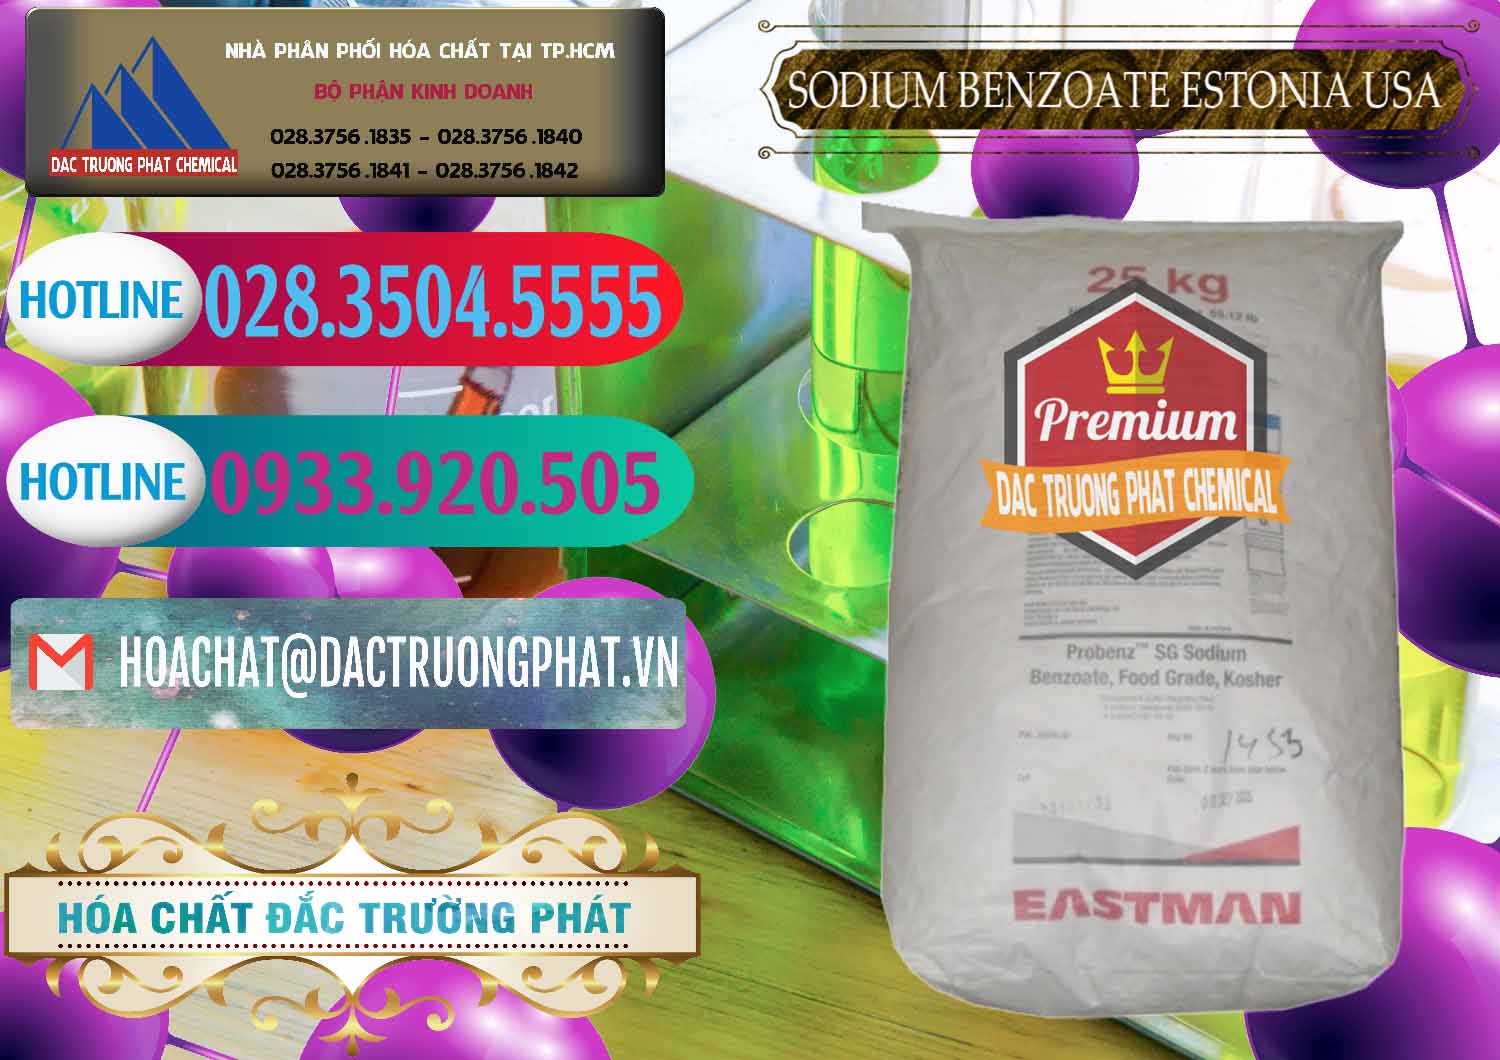 Nơi chuyên bán và cung ứng Sodium Benzoate - Mốc Bột Estonia Mỹ USA - 0468 - Nơi chuyên phân phối và kinh doanh hóa chất tại TP.HCM - truongphat.vn